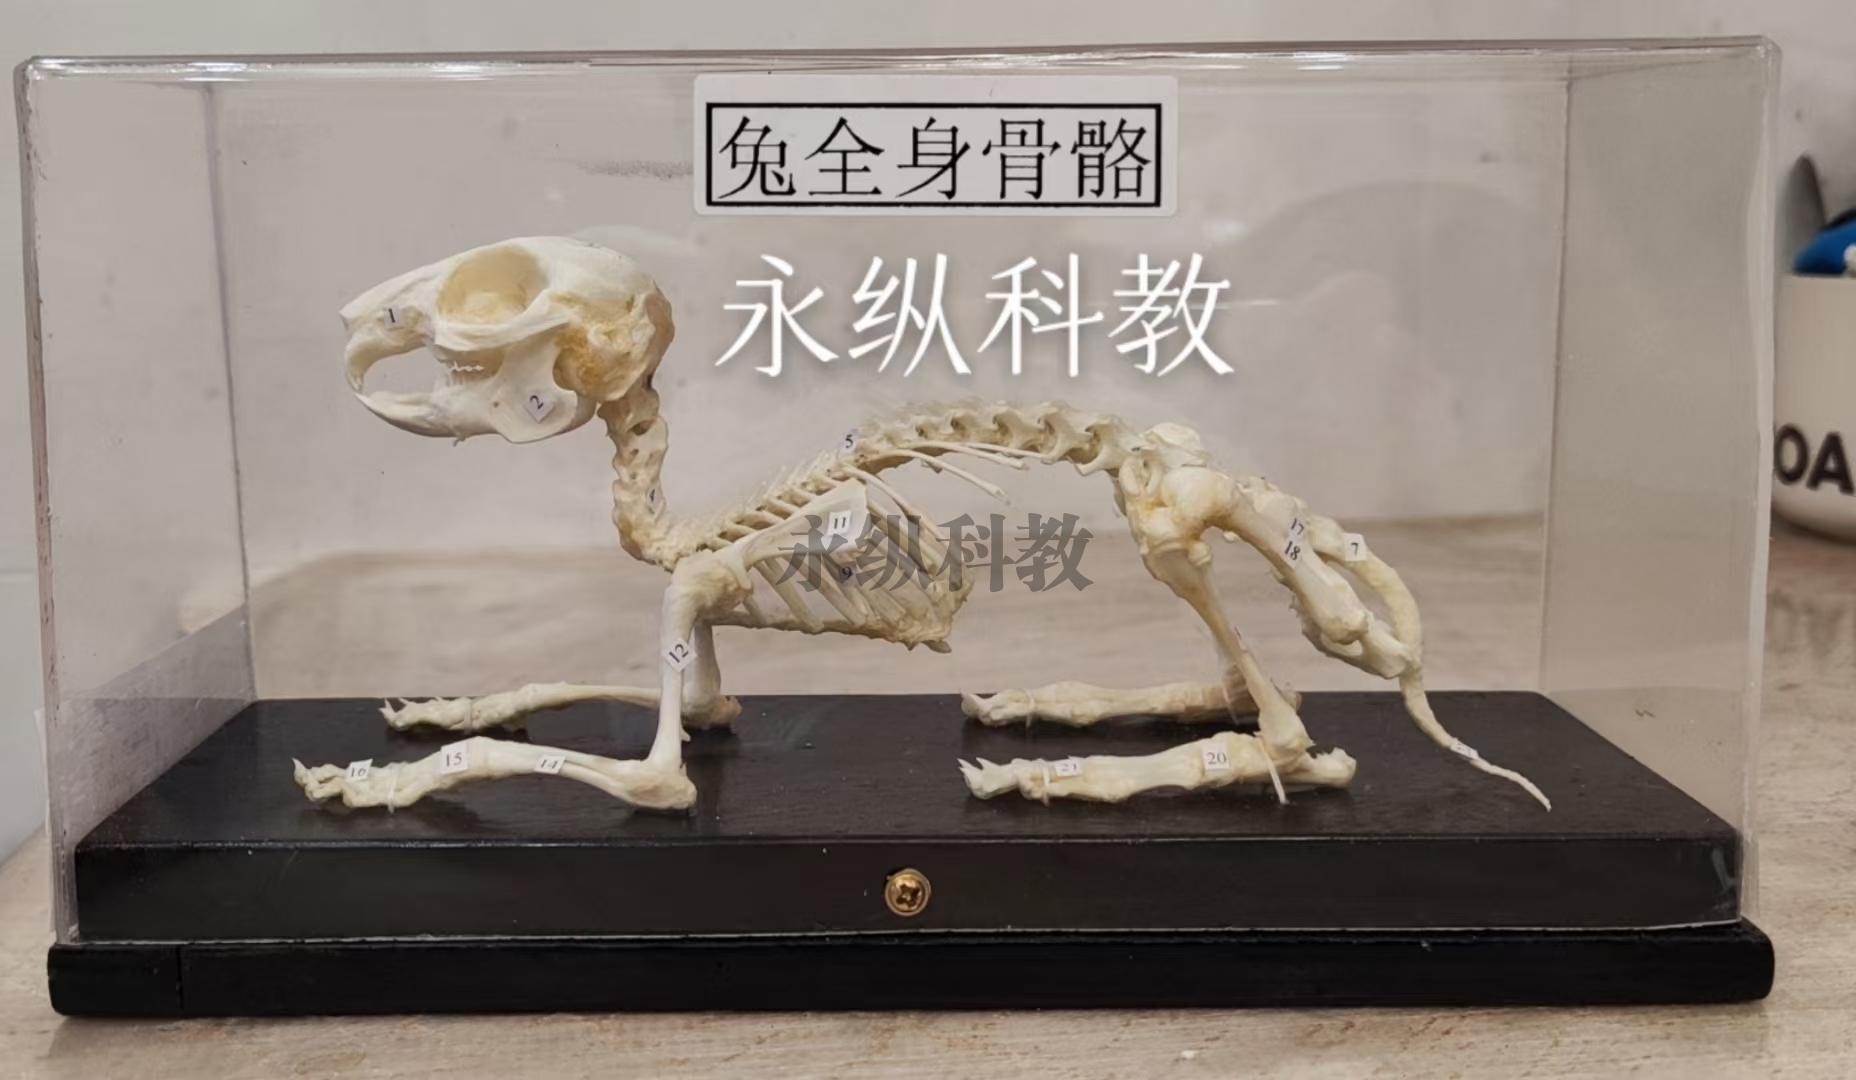 动物骨骼标本